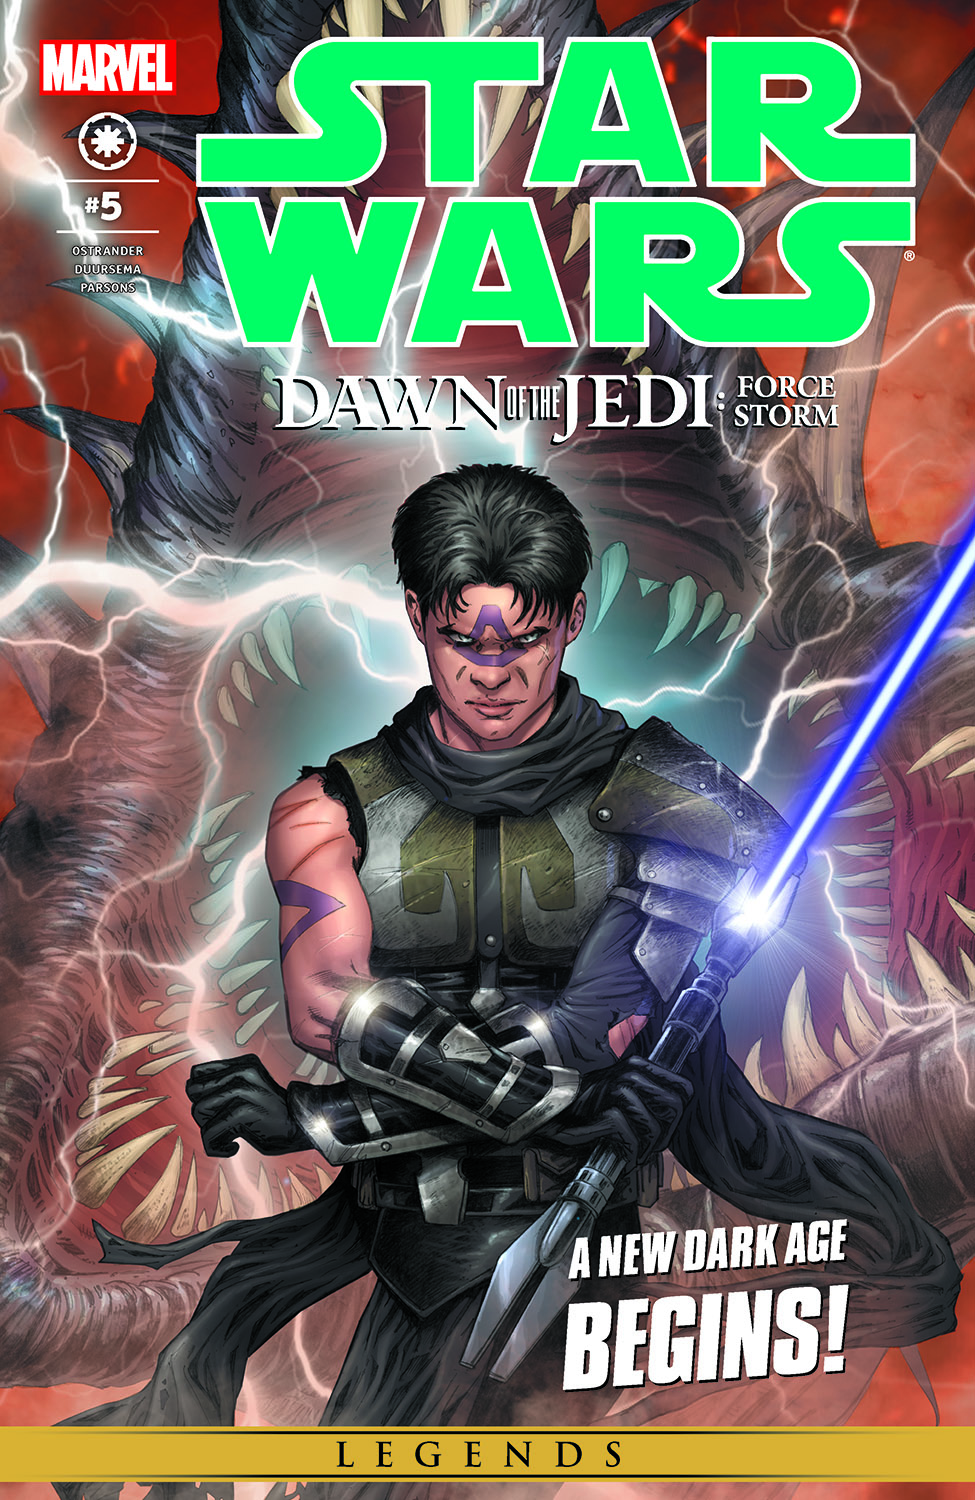 Issue #1 2 3 4 5 Comic SET 1st print Star Wars DAWN OF THE JEDI FORCE WAR 5 